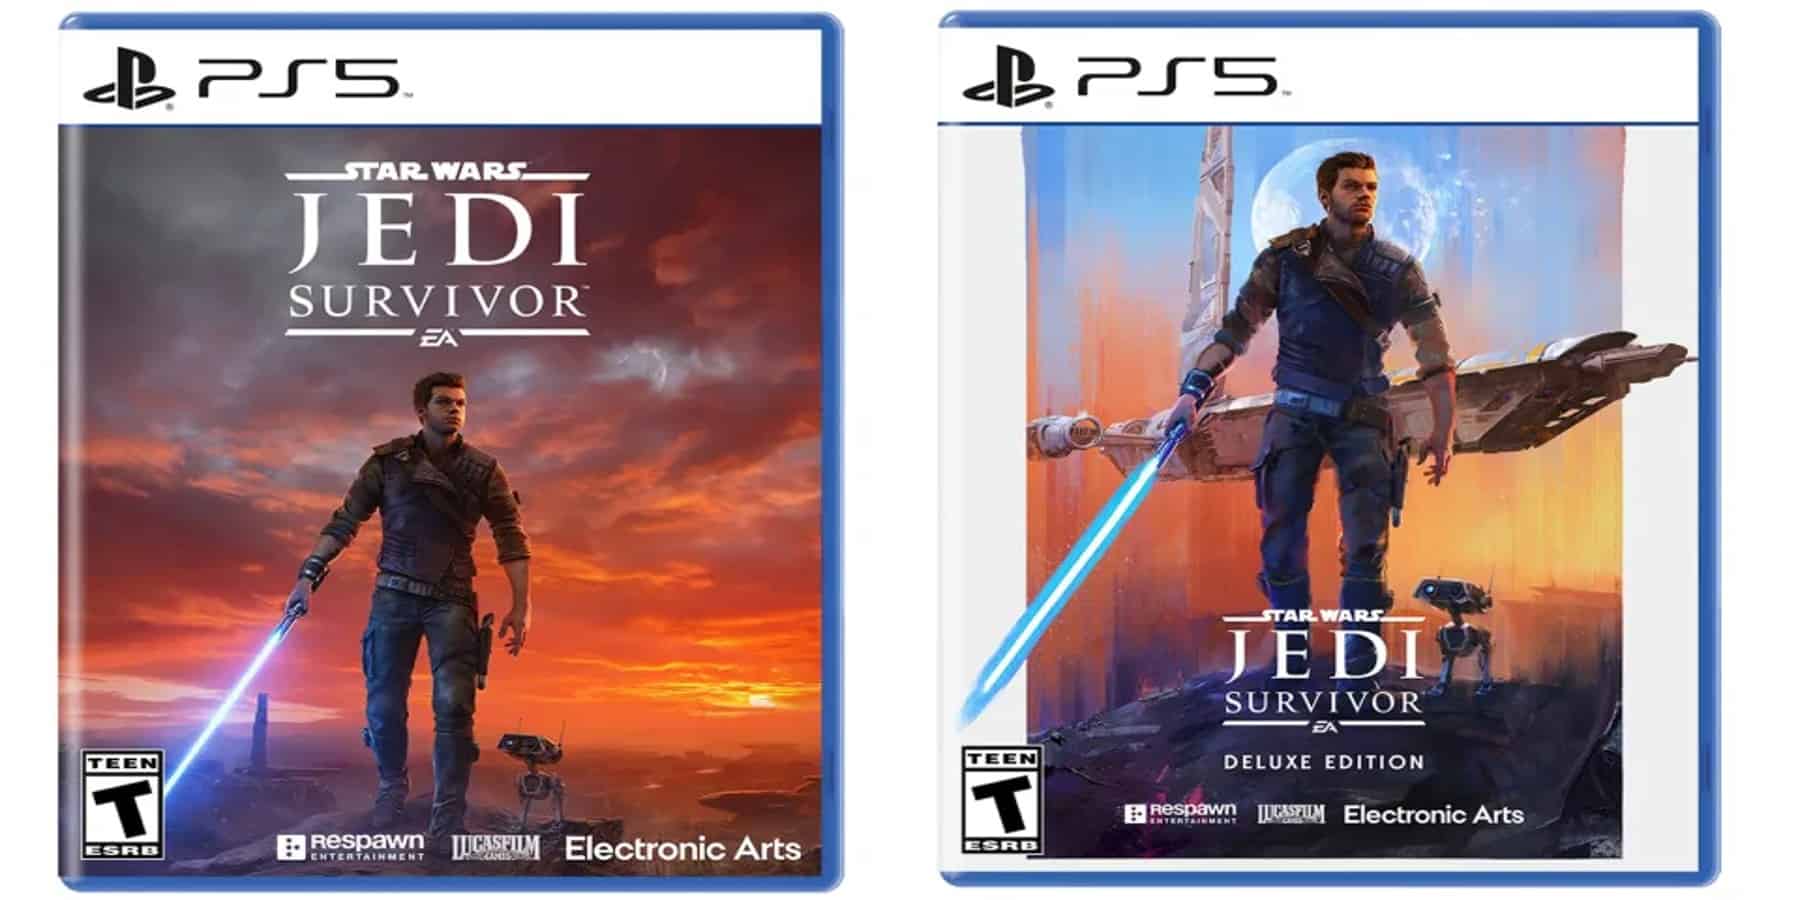 Star Wars Jedi: Survivor [Deluxe Edition]